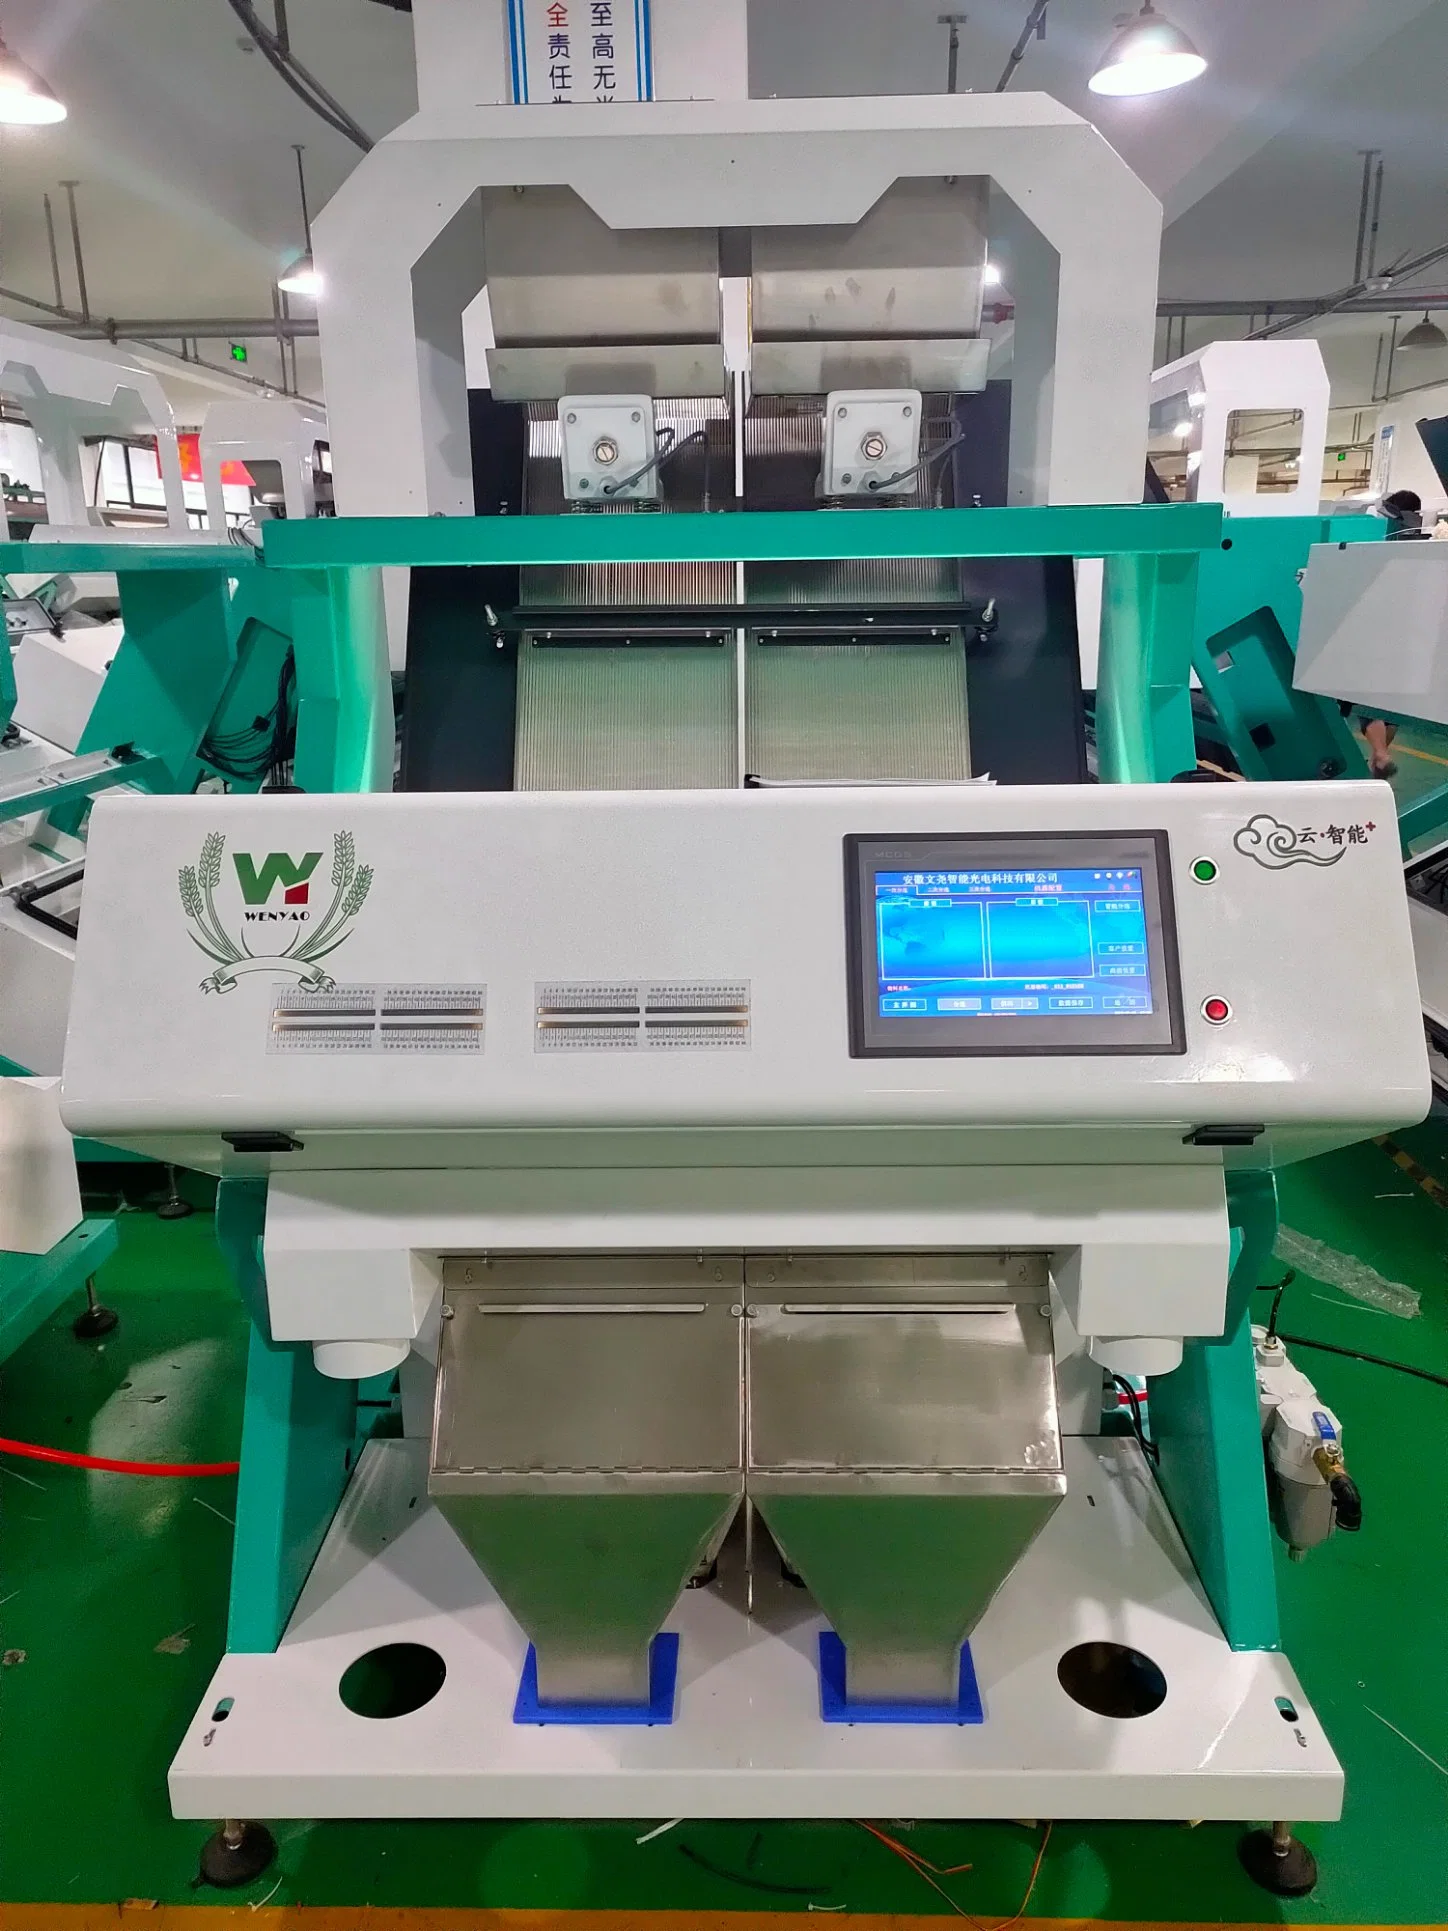 La tuerca de pino clasificador de color de la máquina del fabricante Wenyao